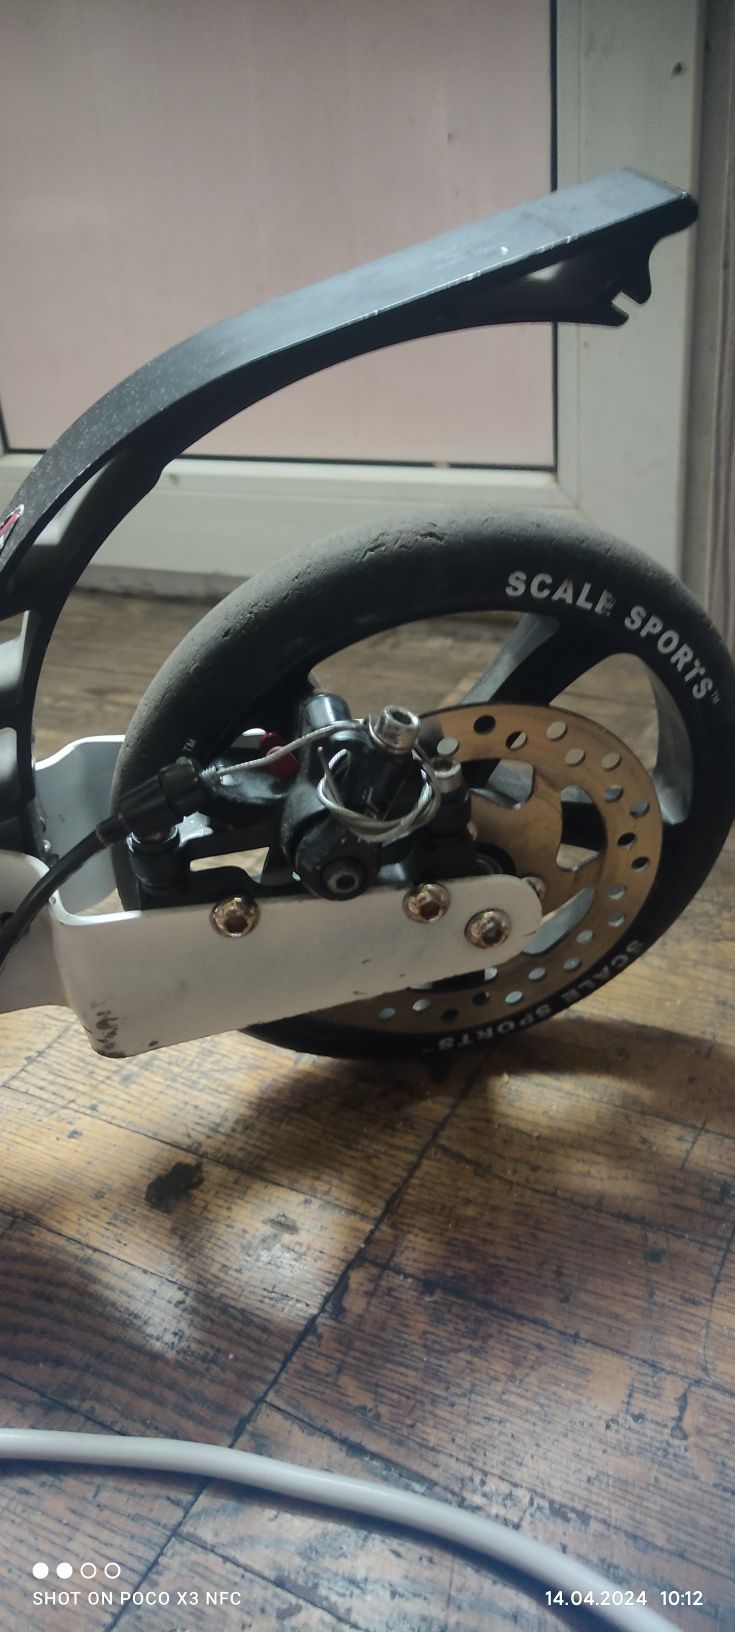 Самокат Scale sport  ss 4 беленький с дисковым тормозом и двойной амор